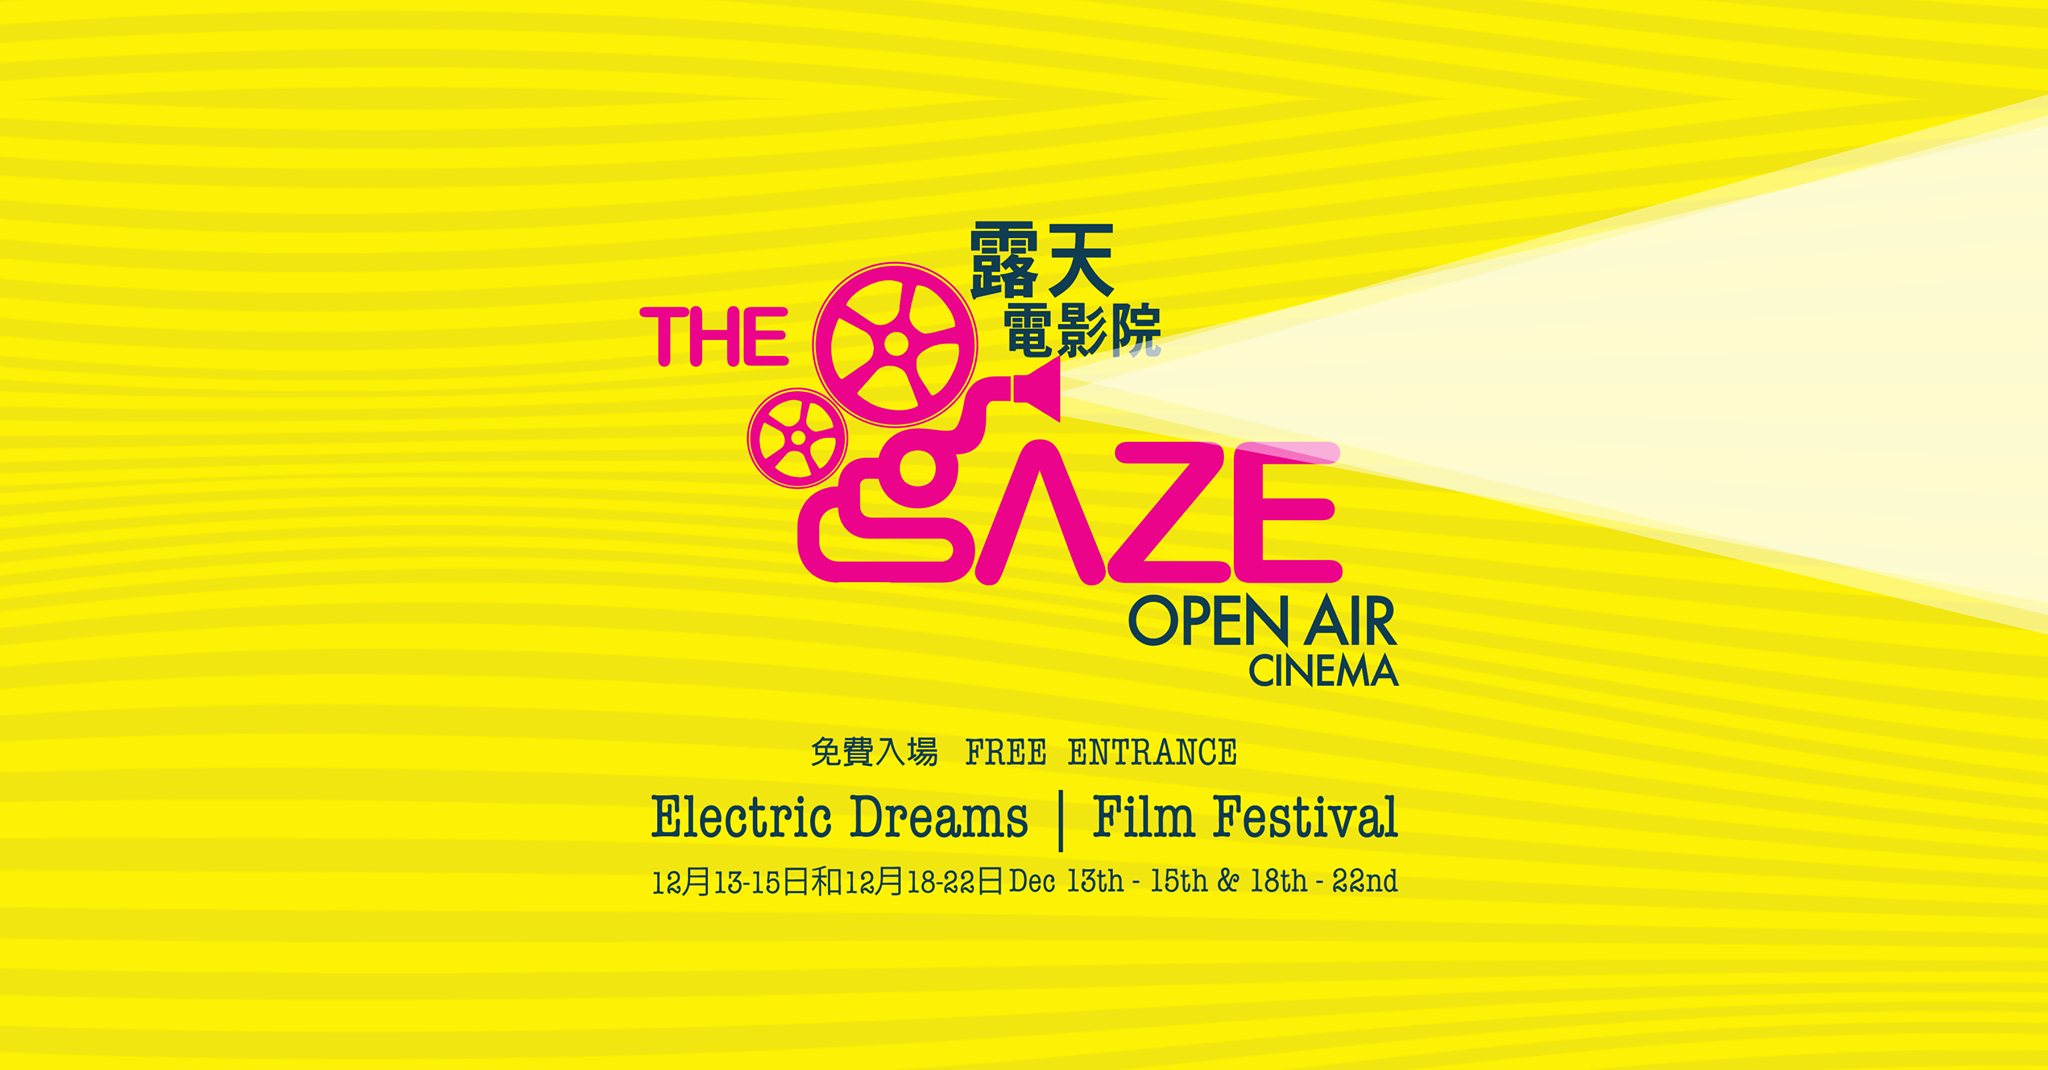 The gaze electric dreams poster facebook